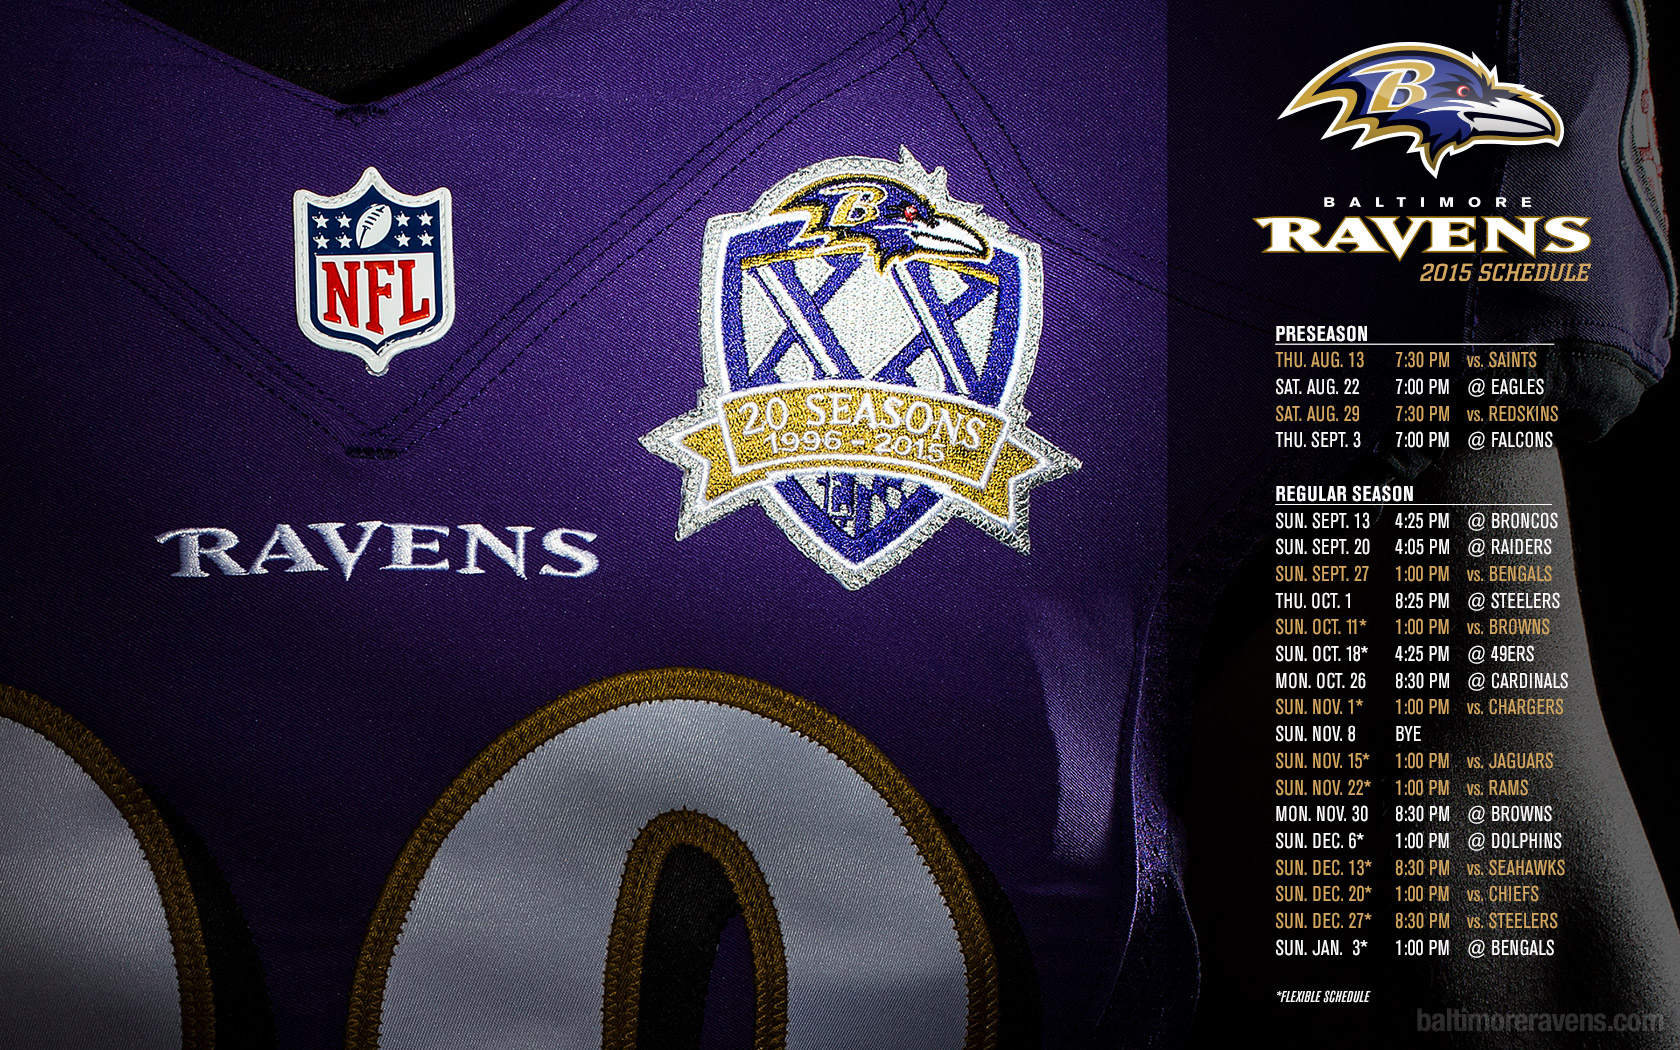 Awesome screensavers blog: Ravens screensaver